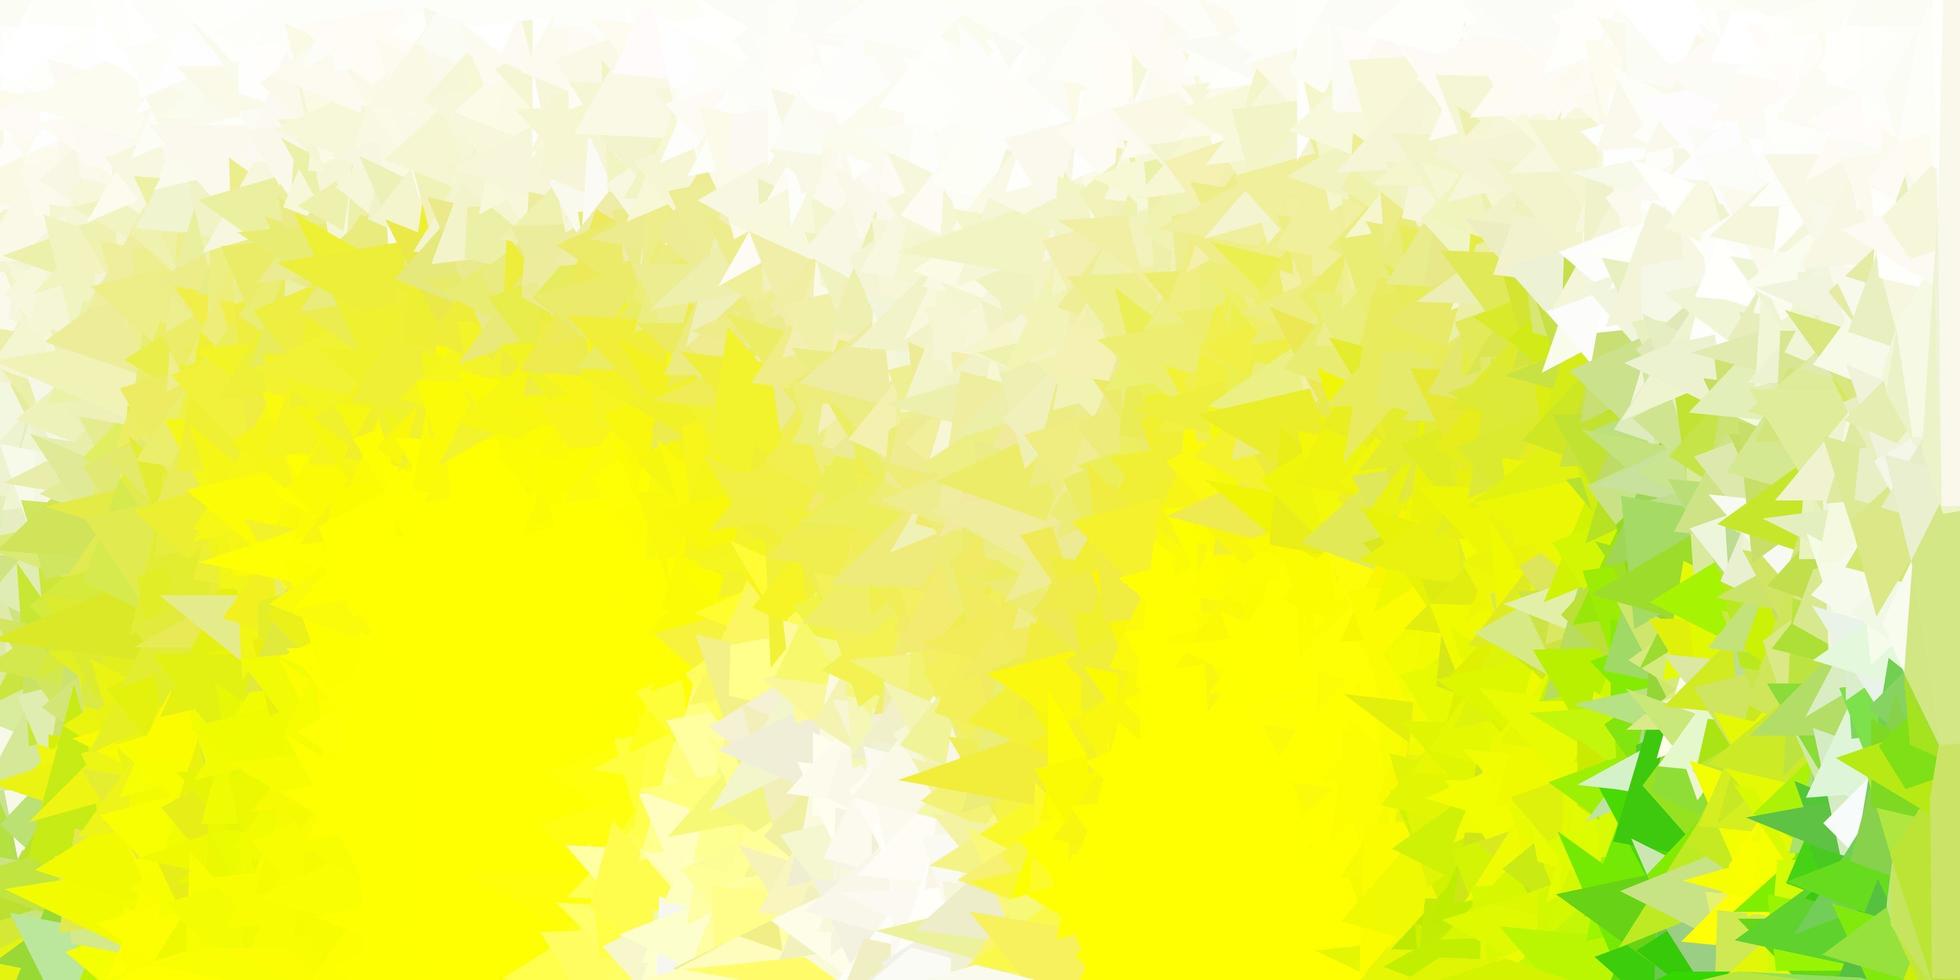 lichtgroen, geel vector abstract driehoeksjabloon.